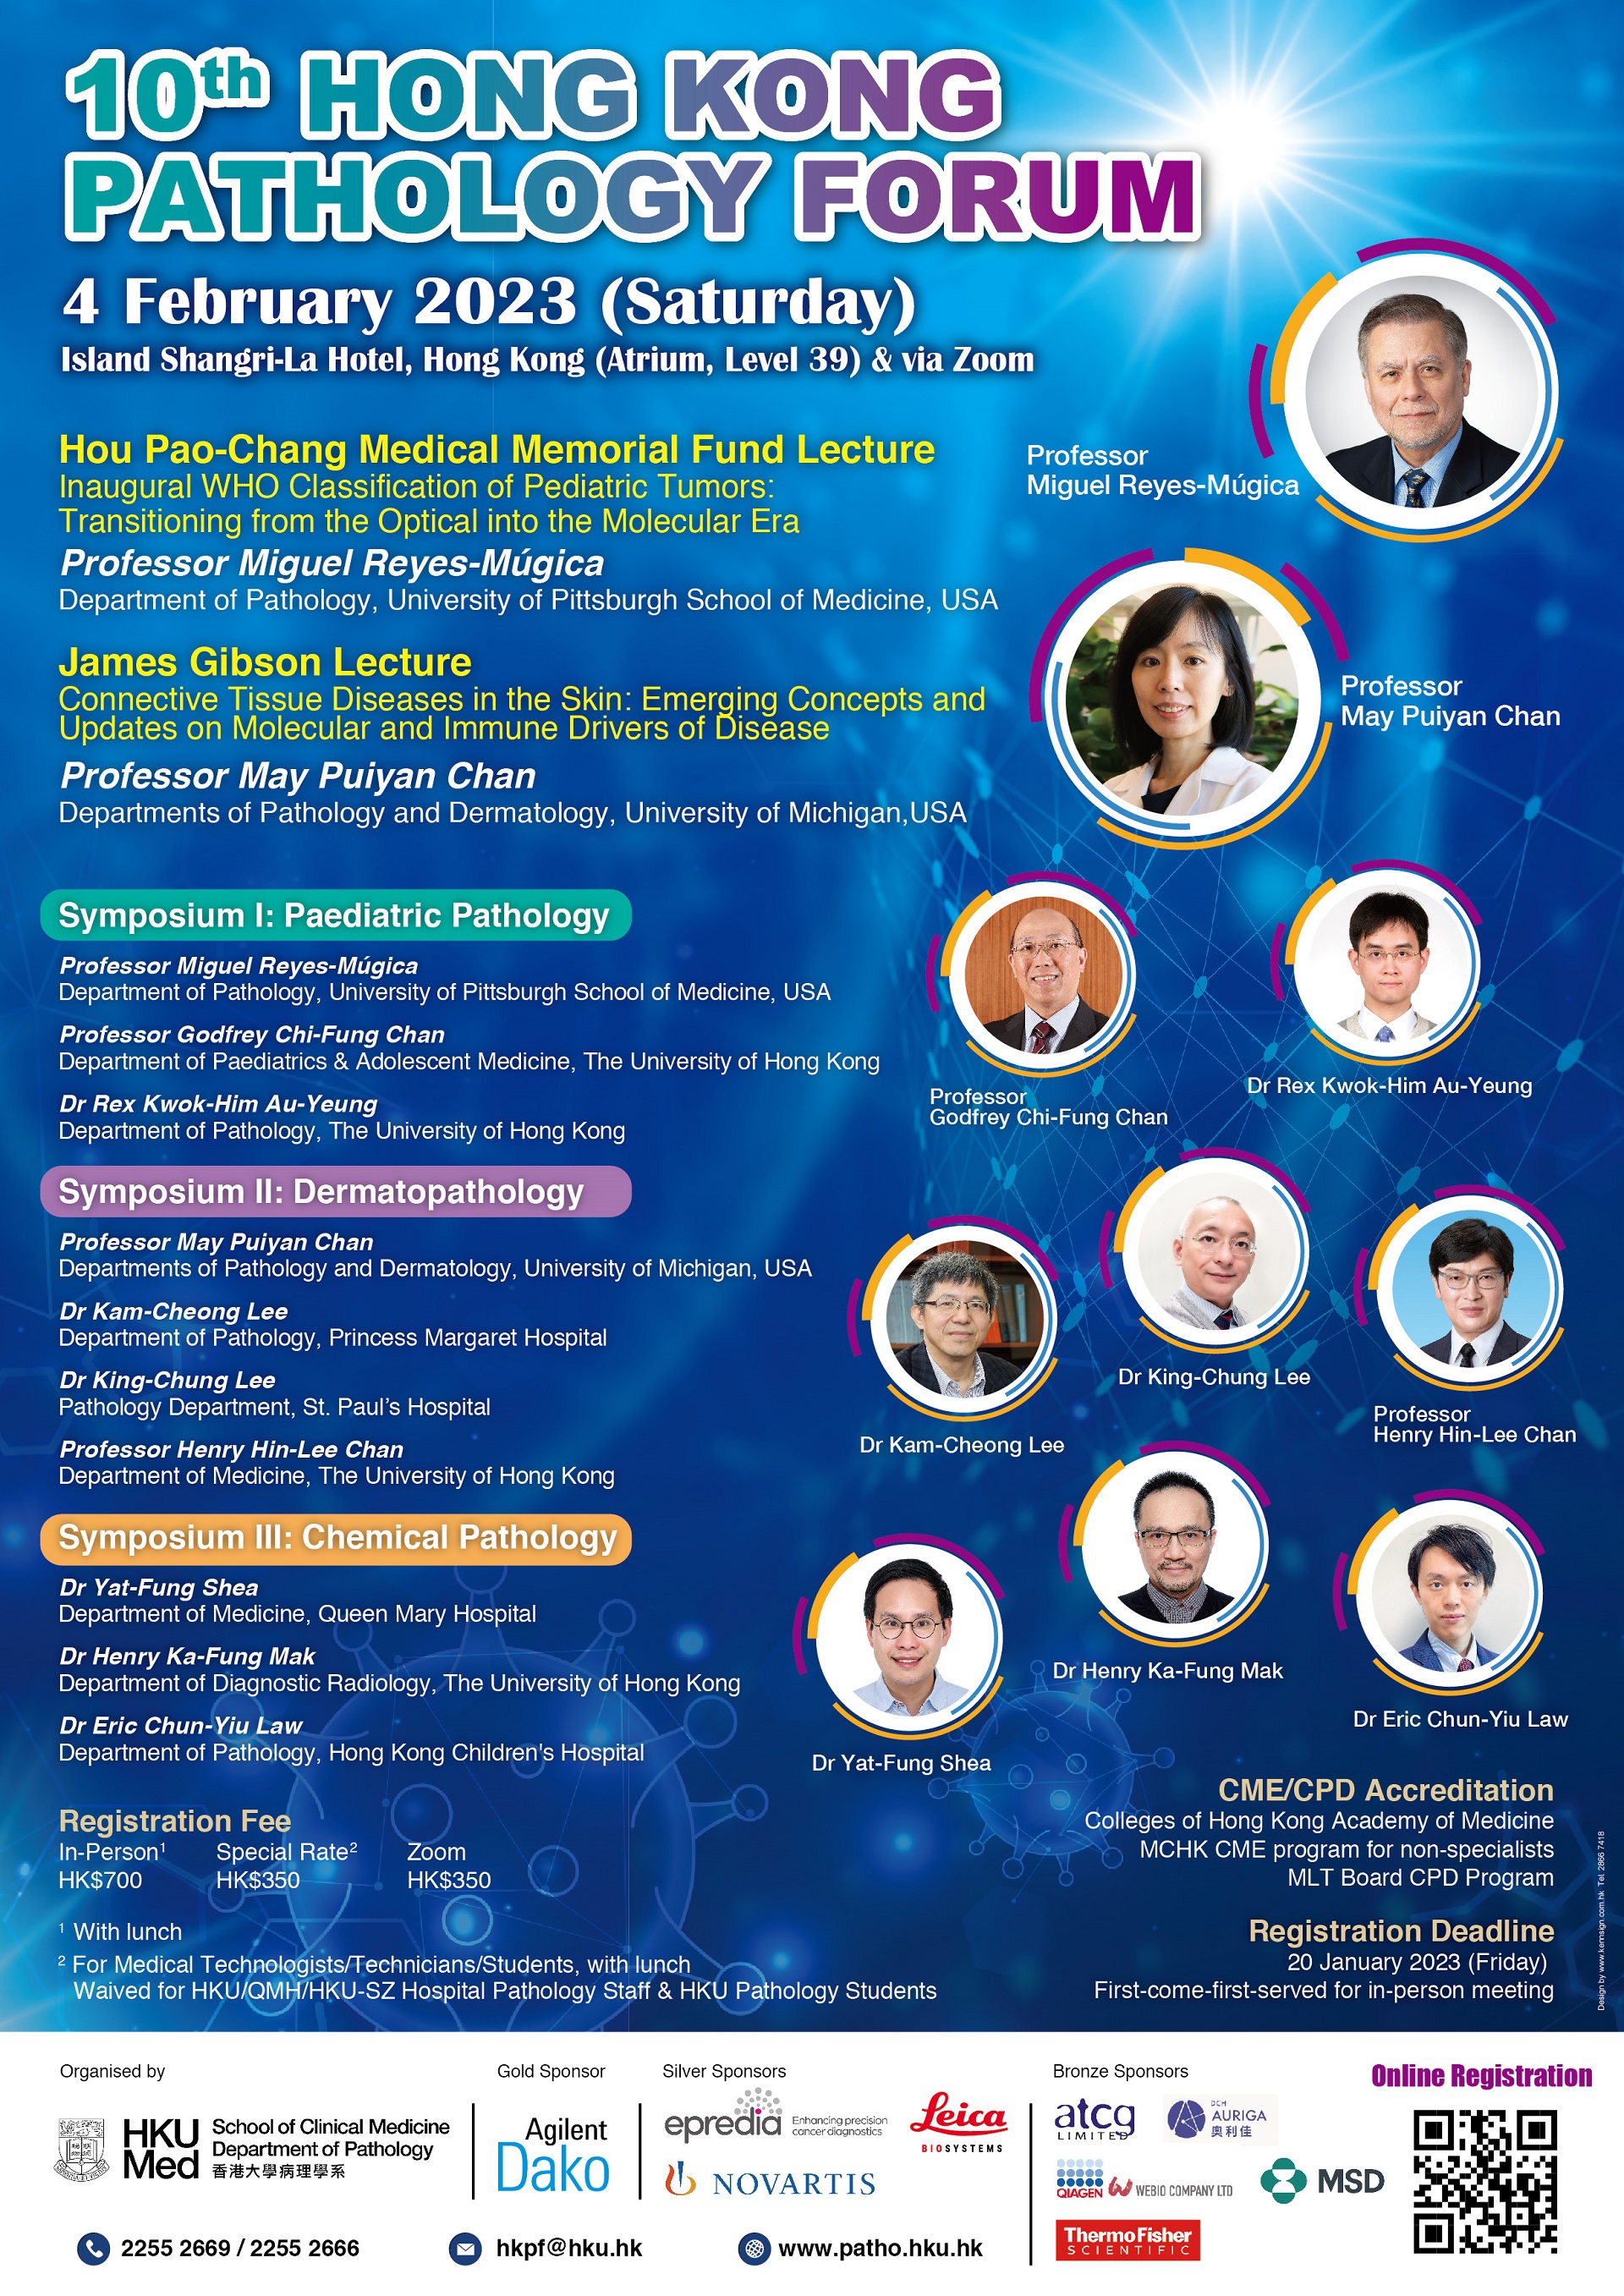 10th Hong Kong Pathology Forum